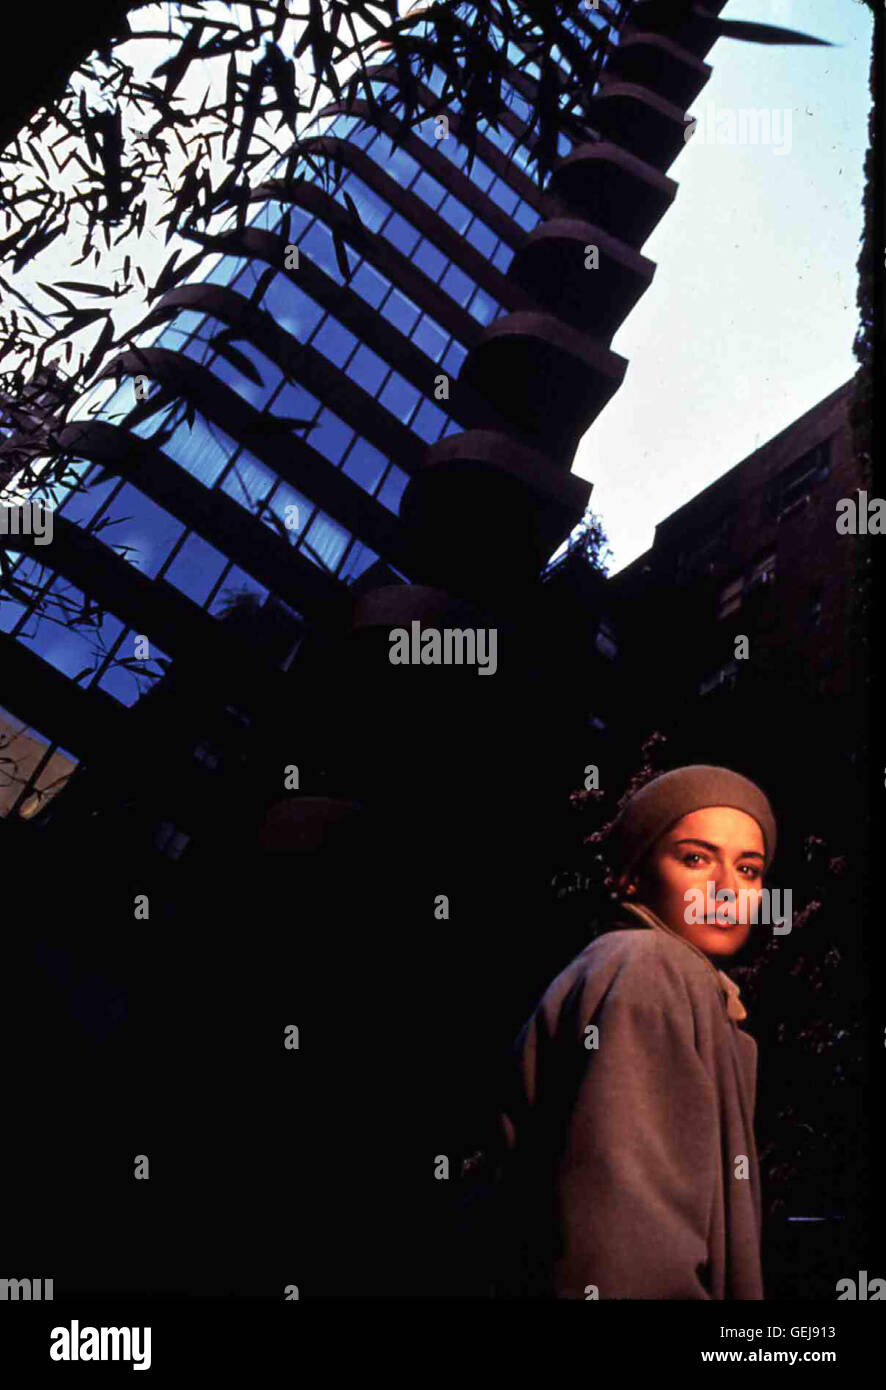 Sharon Stone   Die erfolgreiche Lektorin Carly Norris (Sharon Stone) zieht in ein Hochhaus ein, welches den Namen Sliver traegt. *** Local Caption *** 1993, Sliver, Sliver Stock Photo